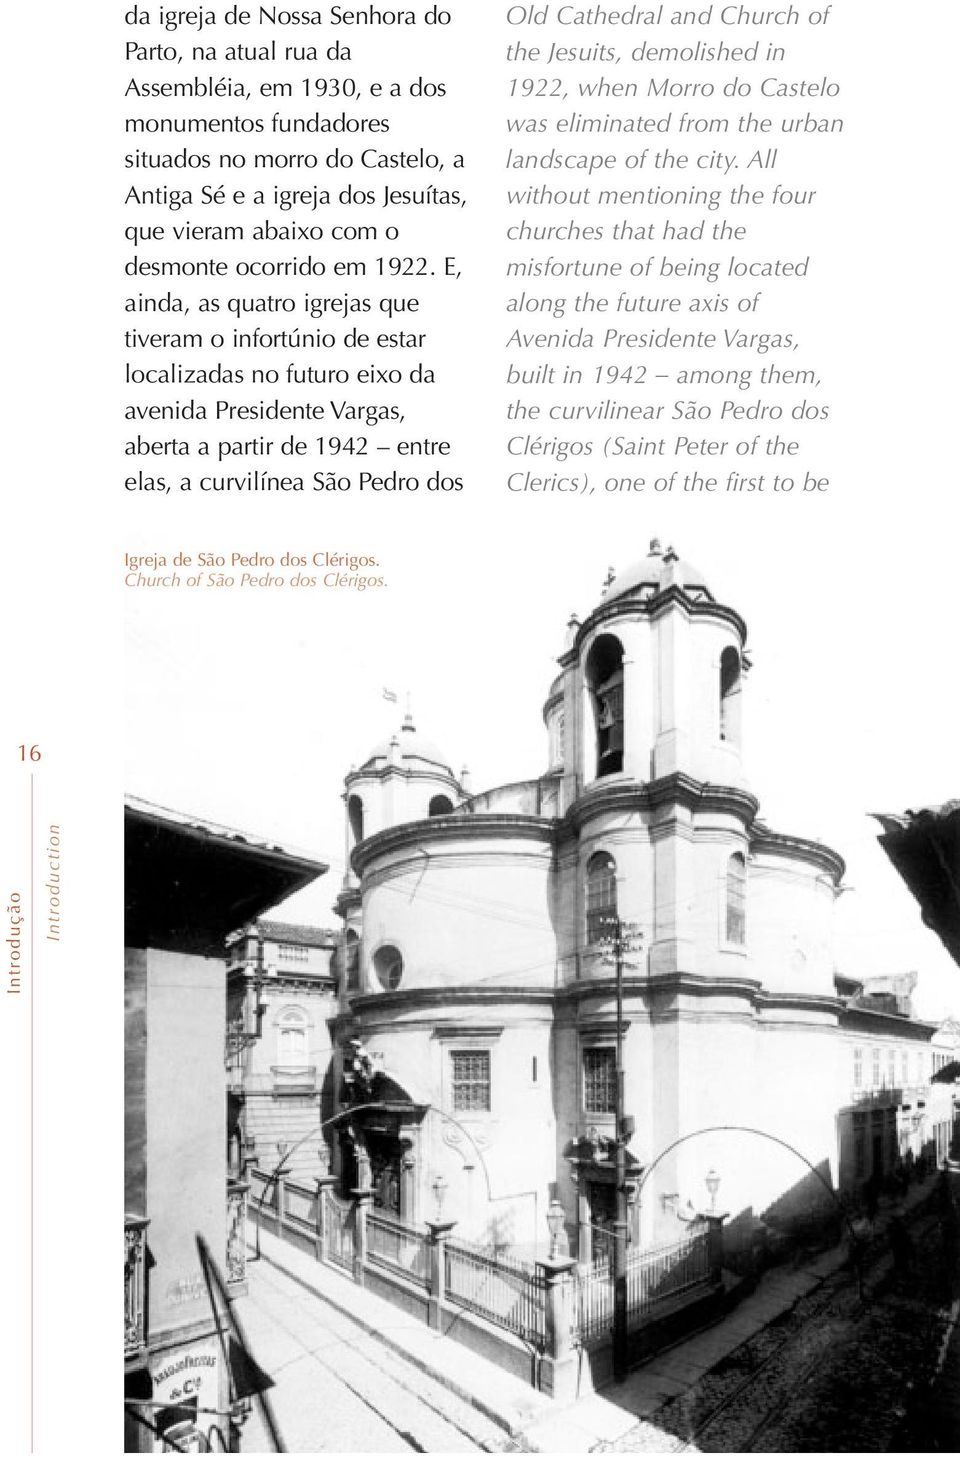 E, ainda, as quatro igrejas que tiveram o infortúnio de estar localizadas no futuro eixo da avenida Presidente Vargas, aberta a partir de 1942 entre elas, a curvilínea São Pedro dos Old Cathedral and